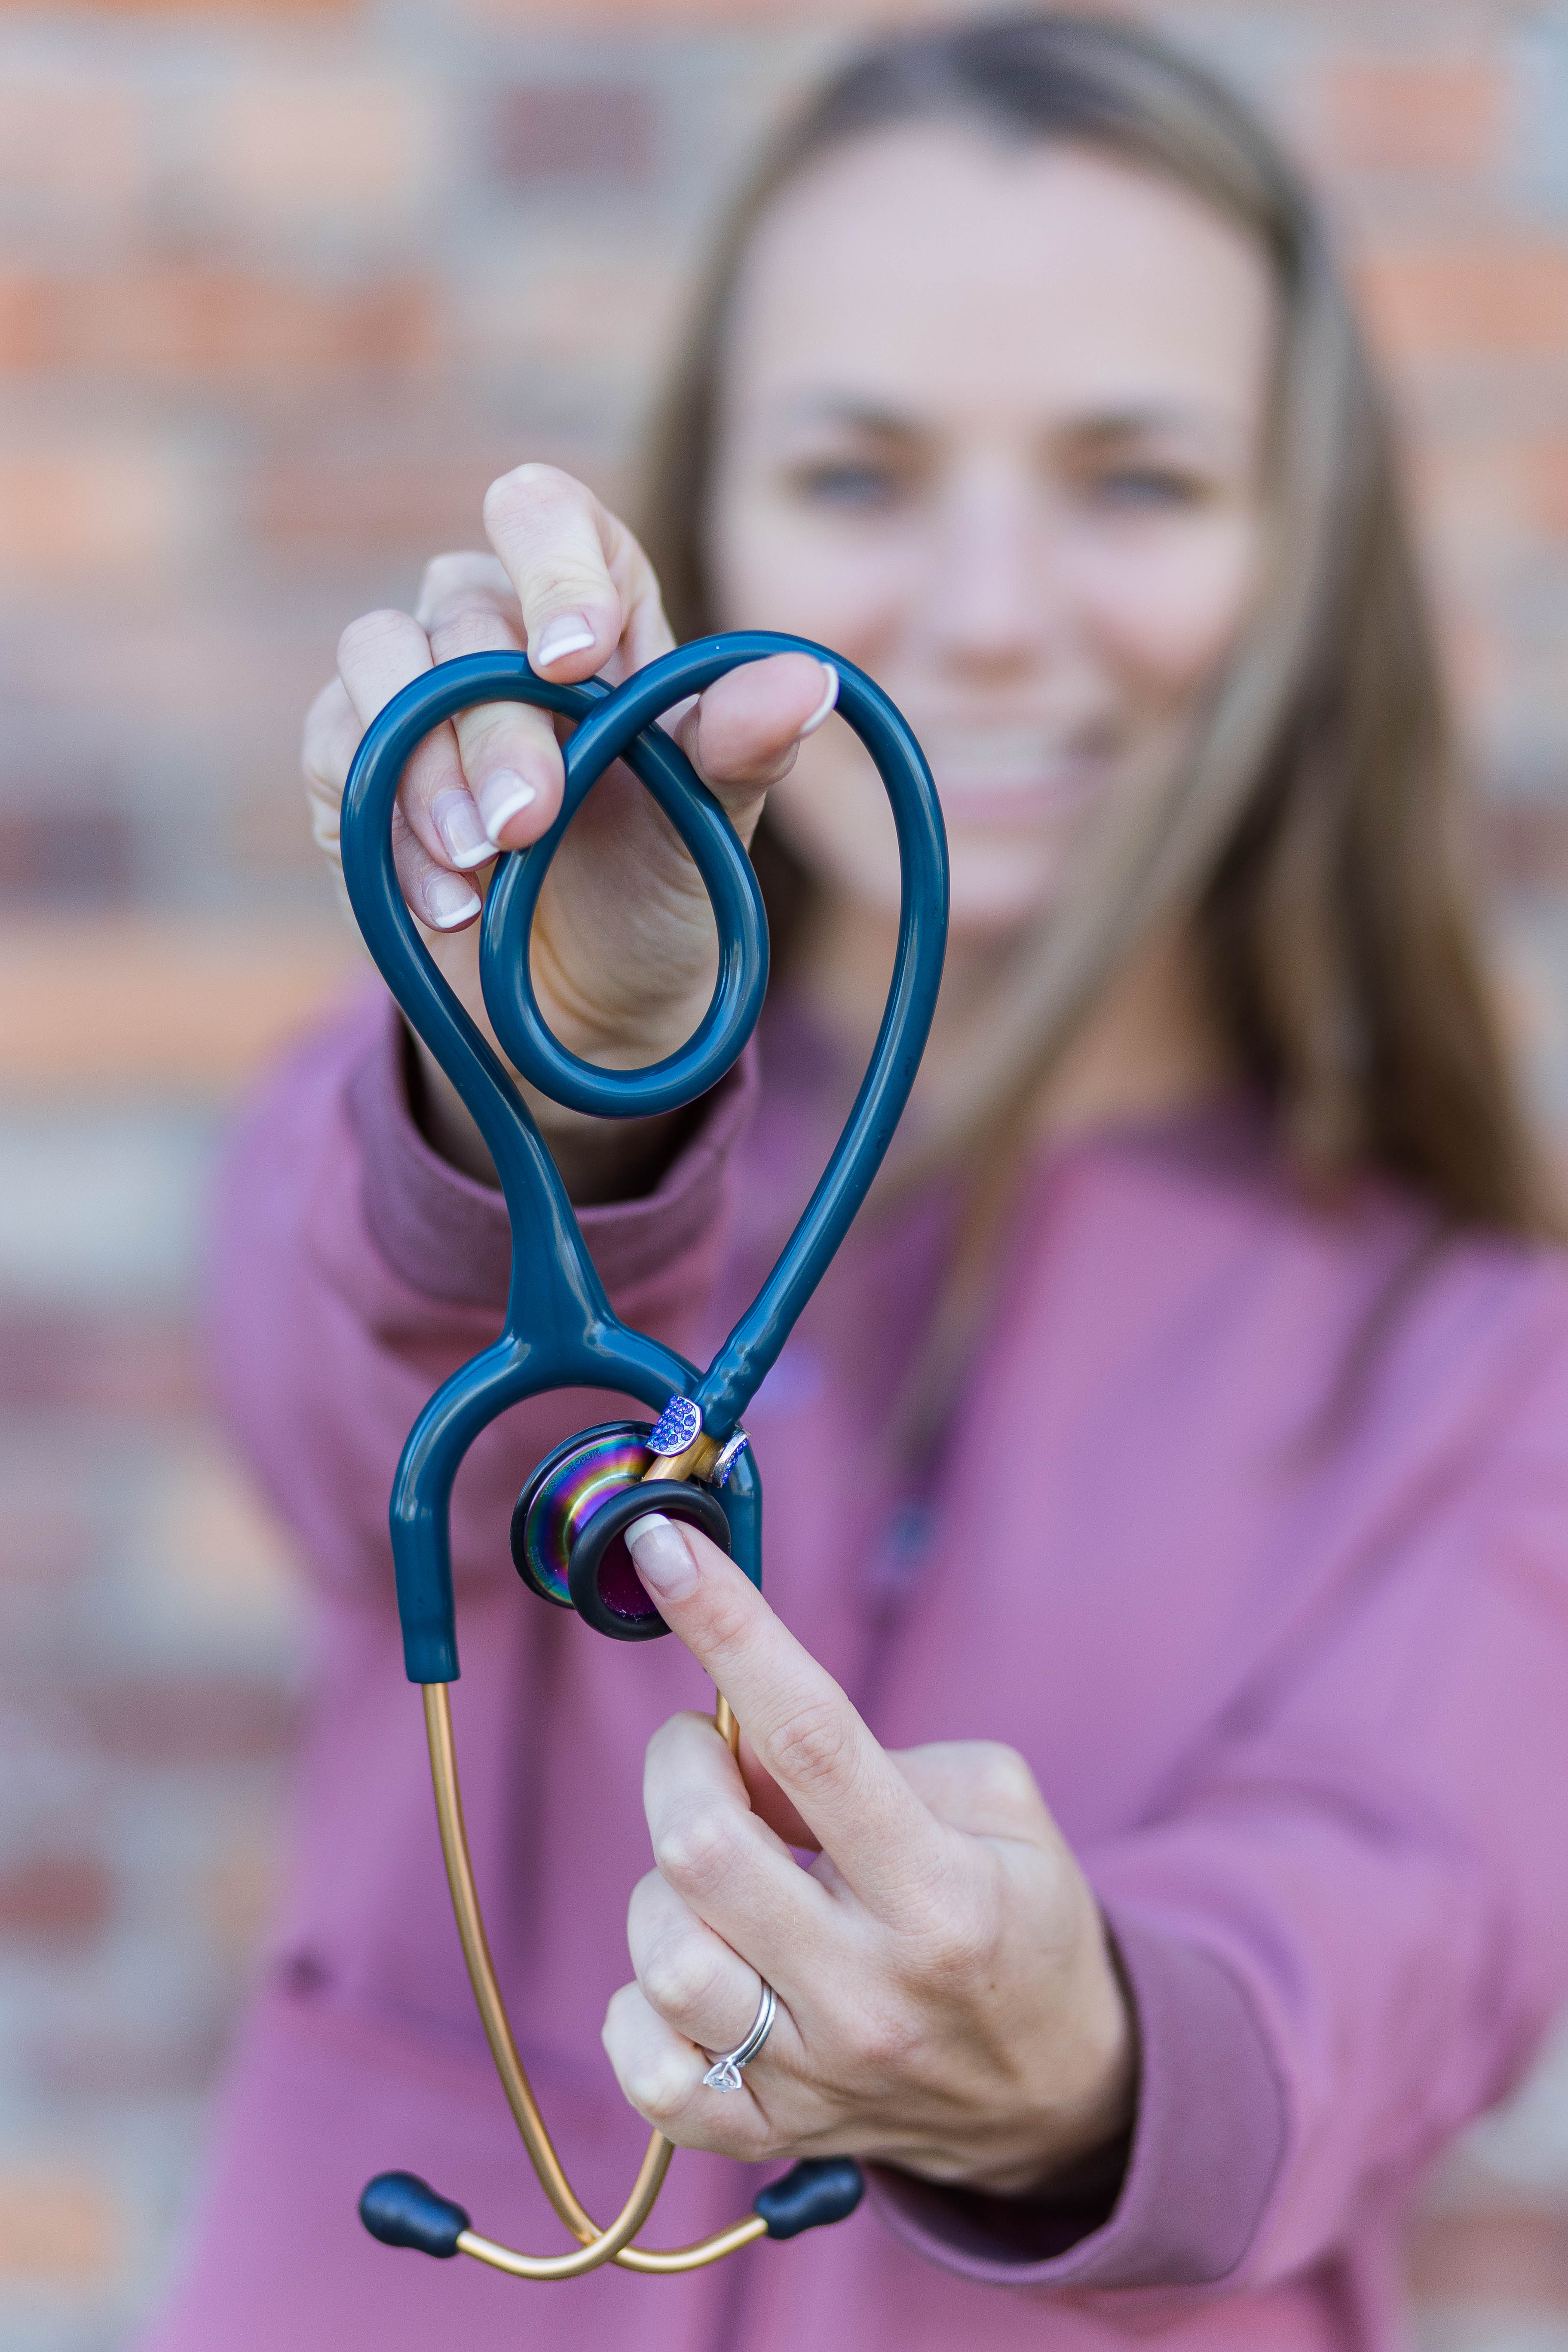 Heart-shaped stethoscope